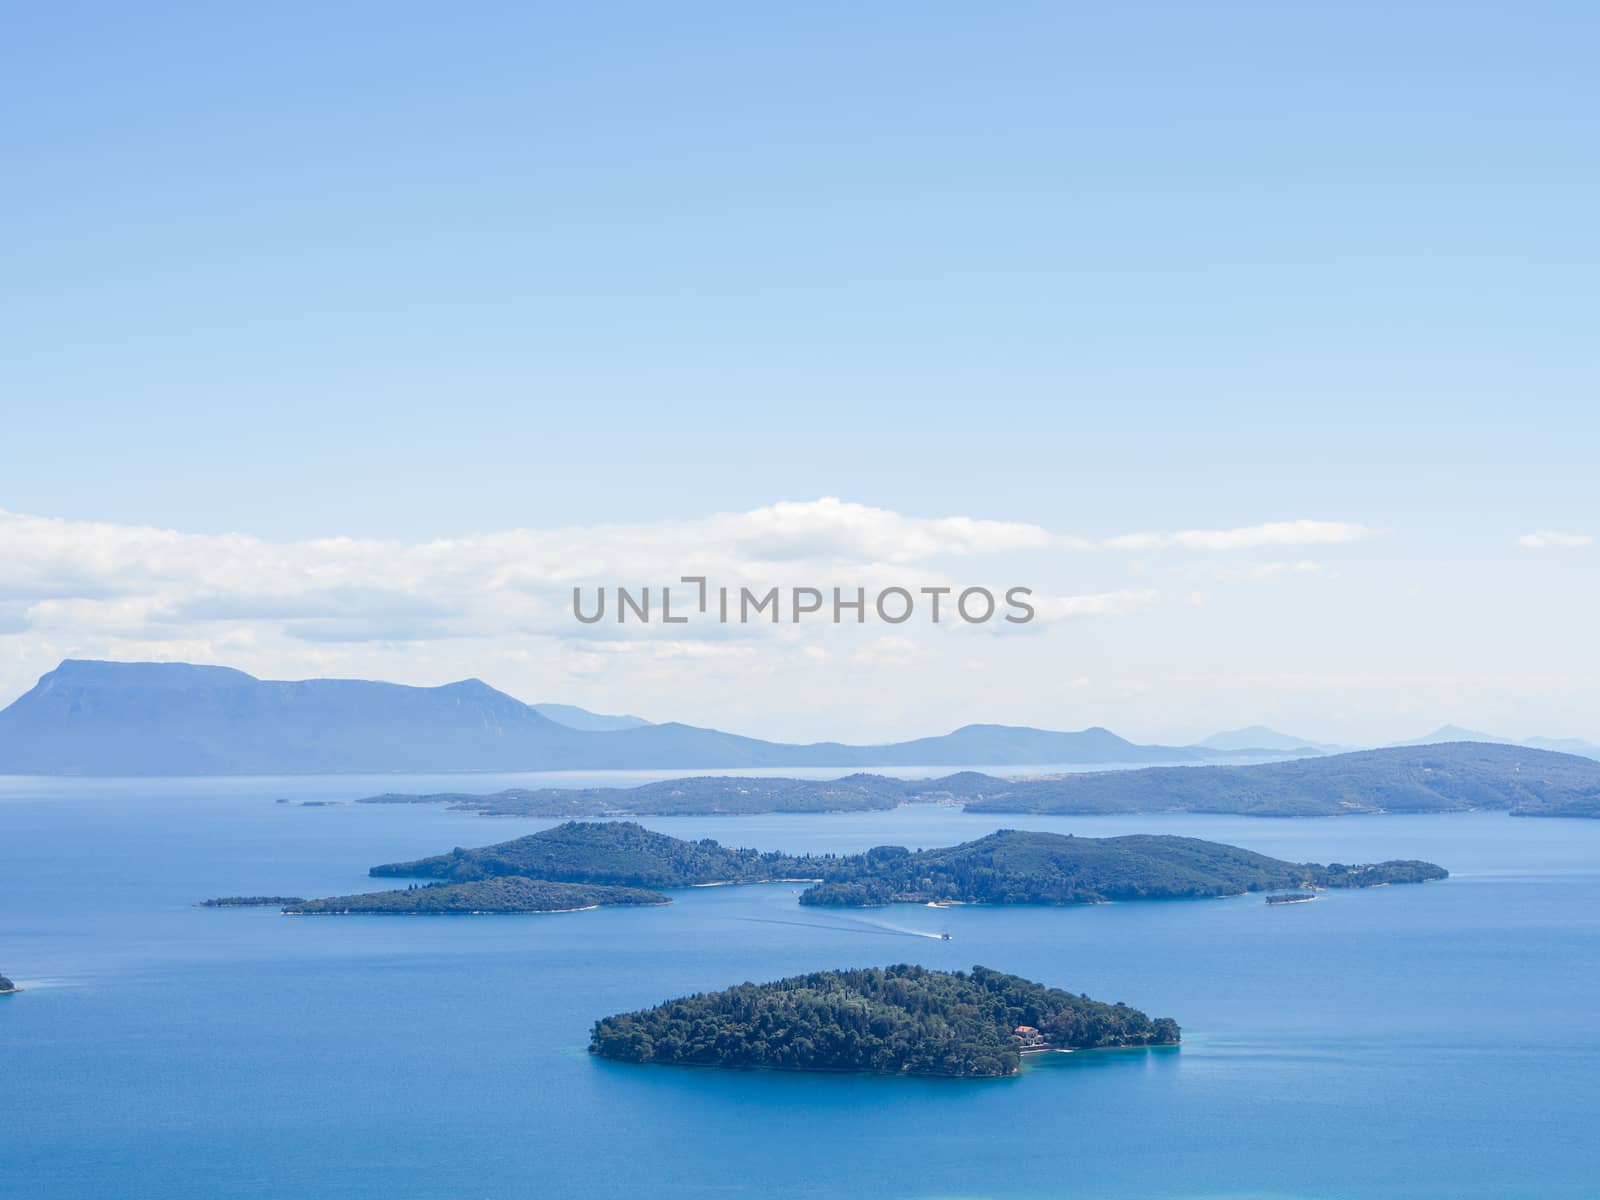 Skorpios island, near Lefkada, Greece, aerial view